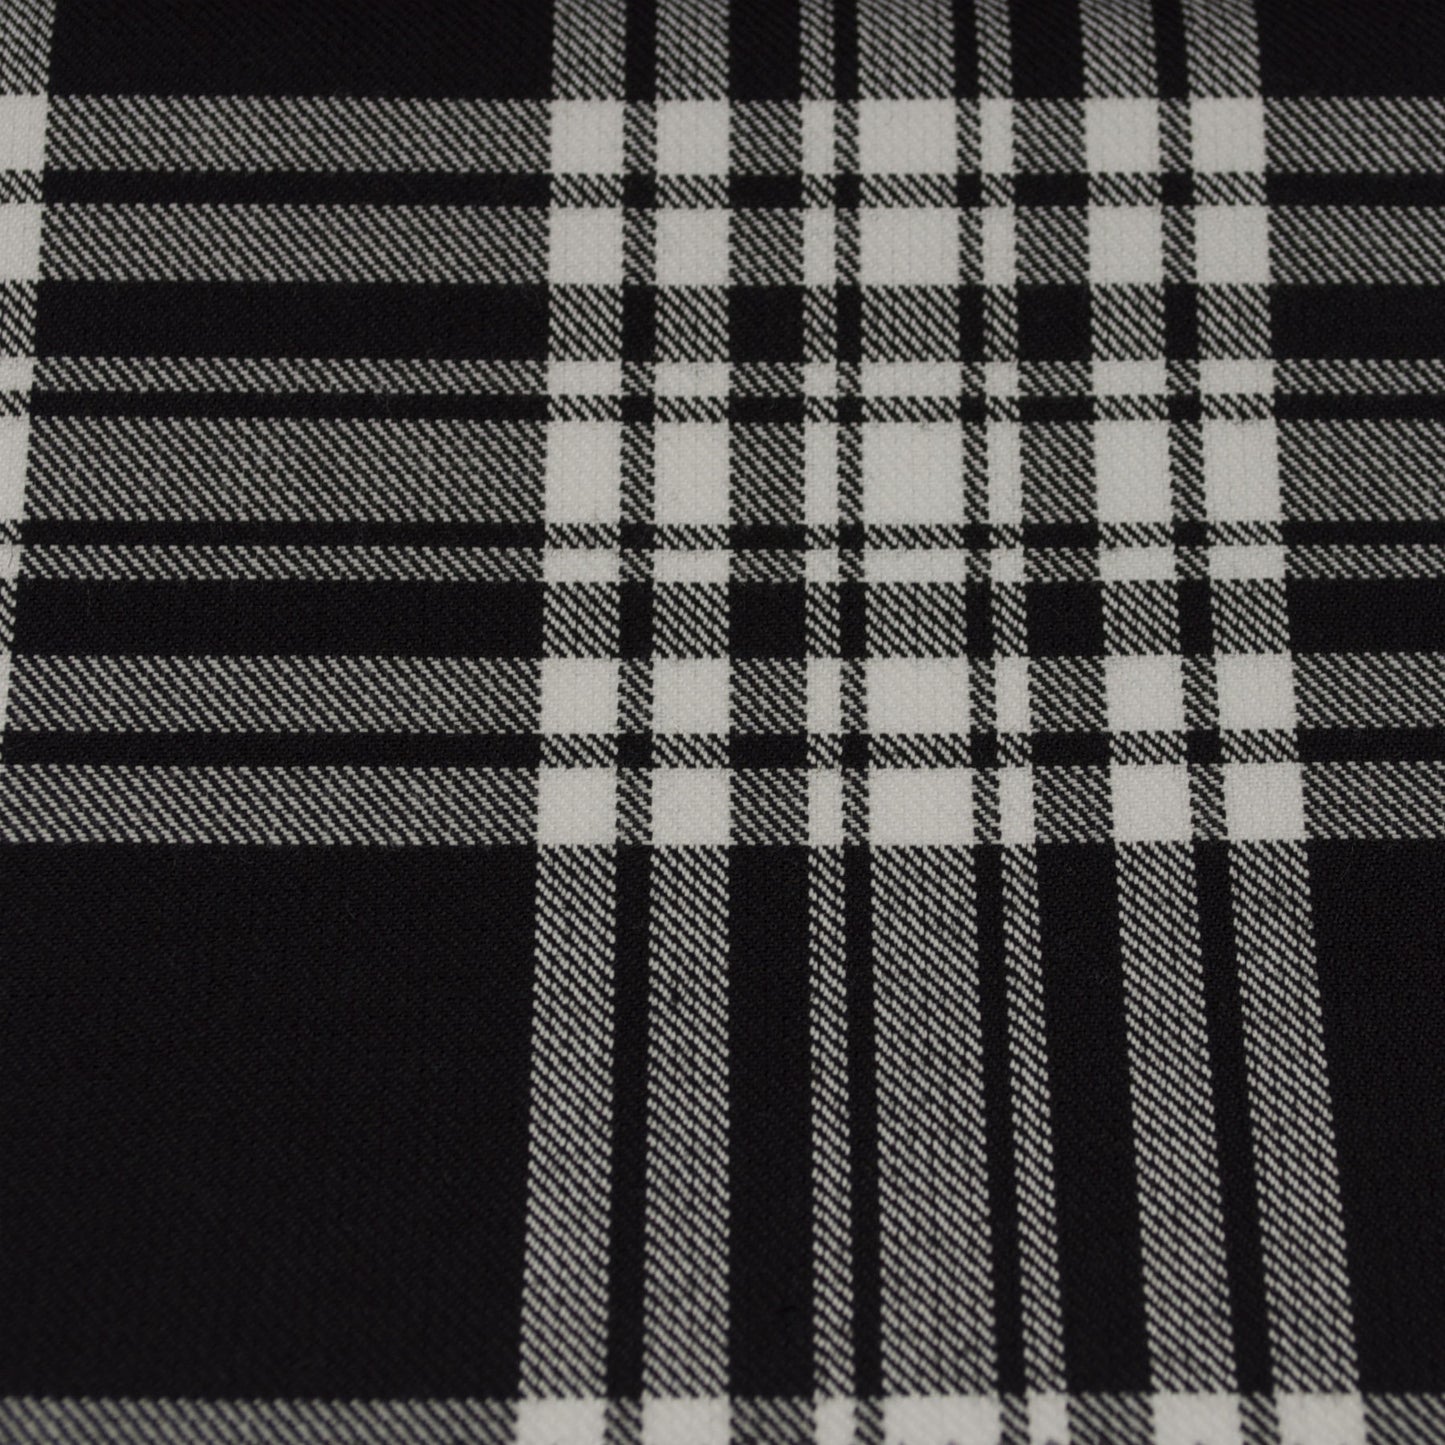 Tartan Fabric - Menzies - Black